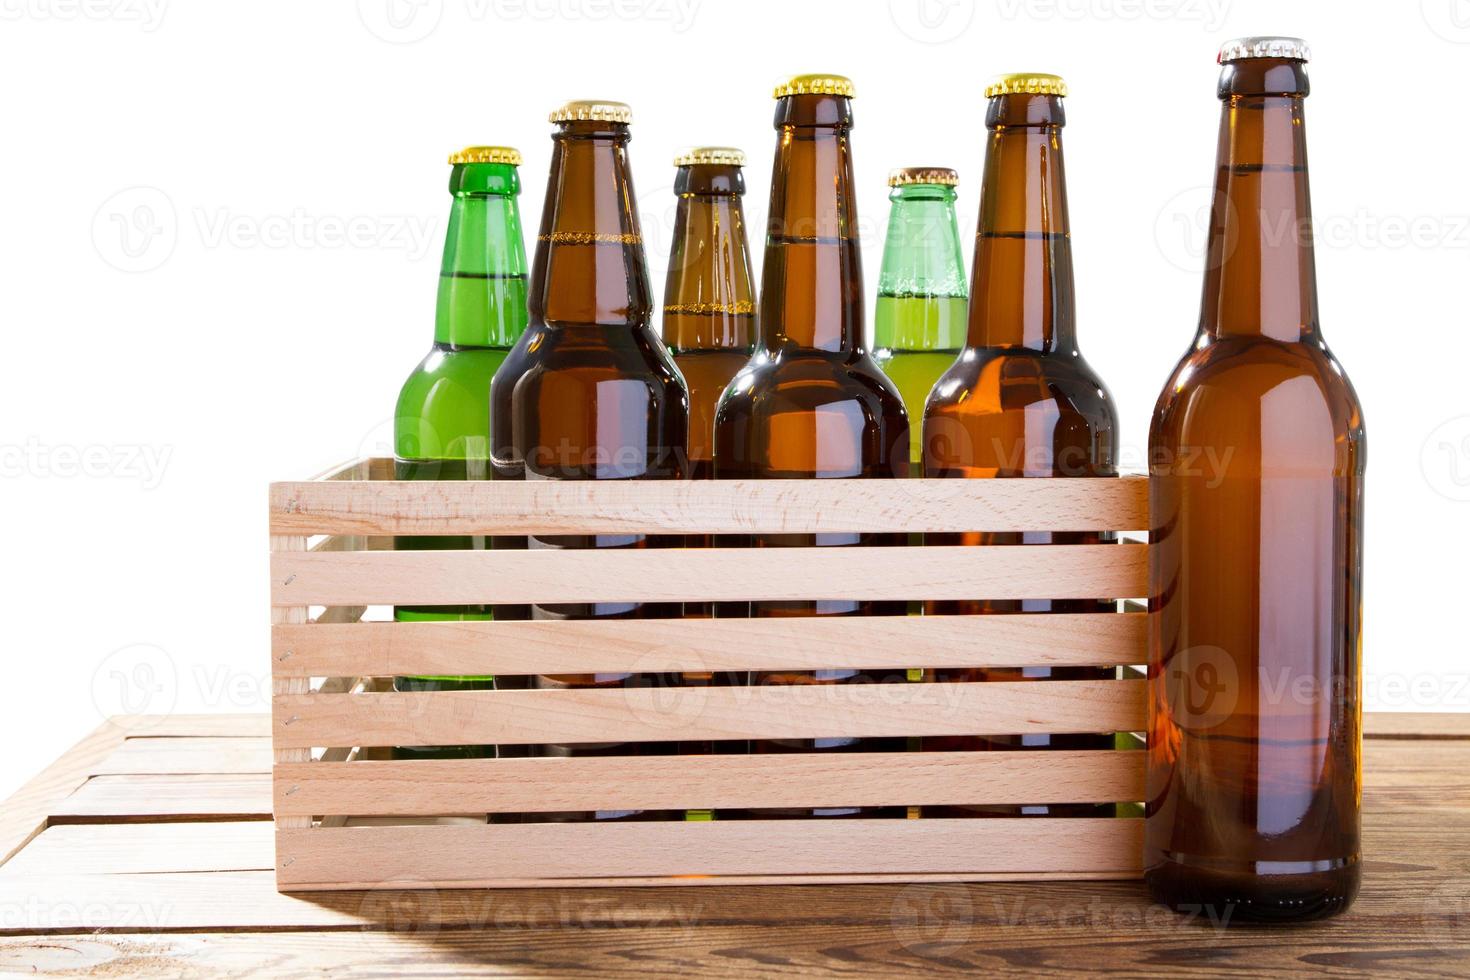 molte bottiglie di vetro di birra diversa su una scatola di legno senza etichetta isolata, foto di diverse bottiglie di birra piene senza etichette. percorso di ritaglio separato per ogni bottiglia inclusa.